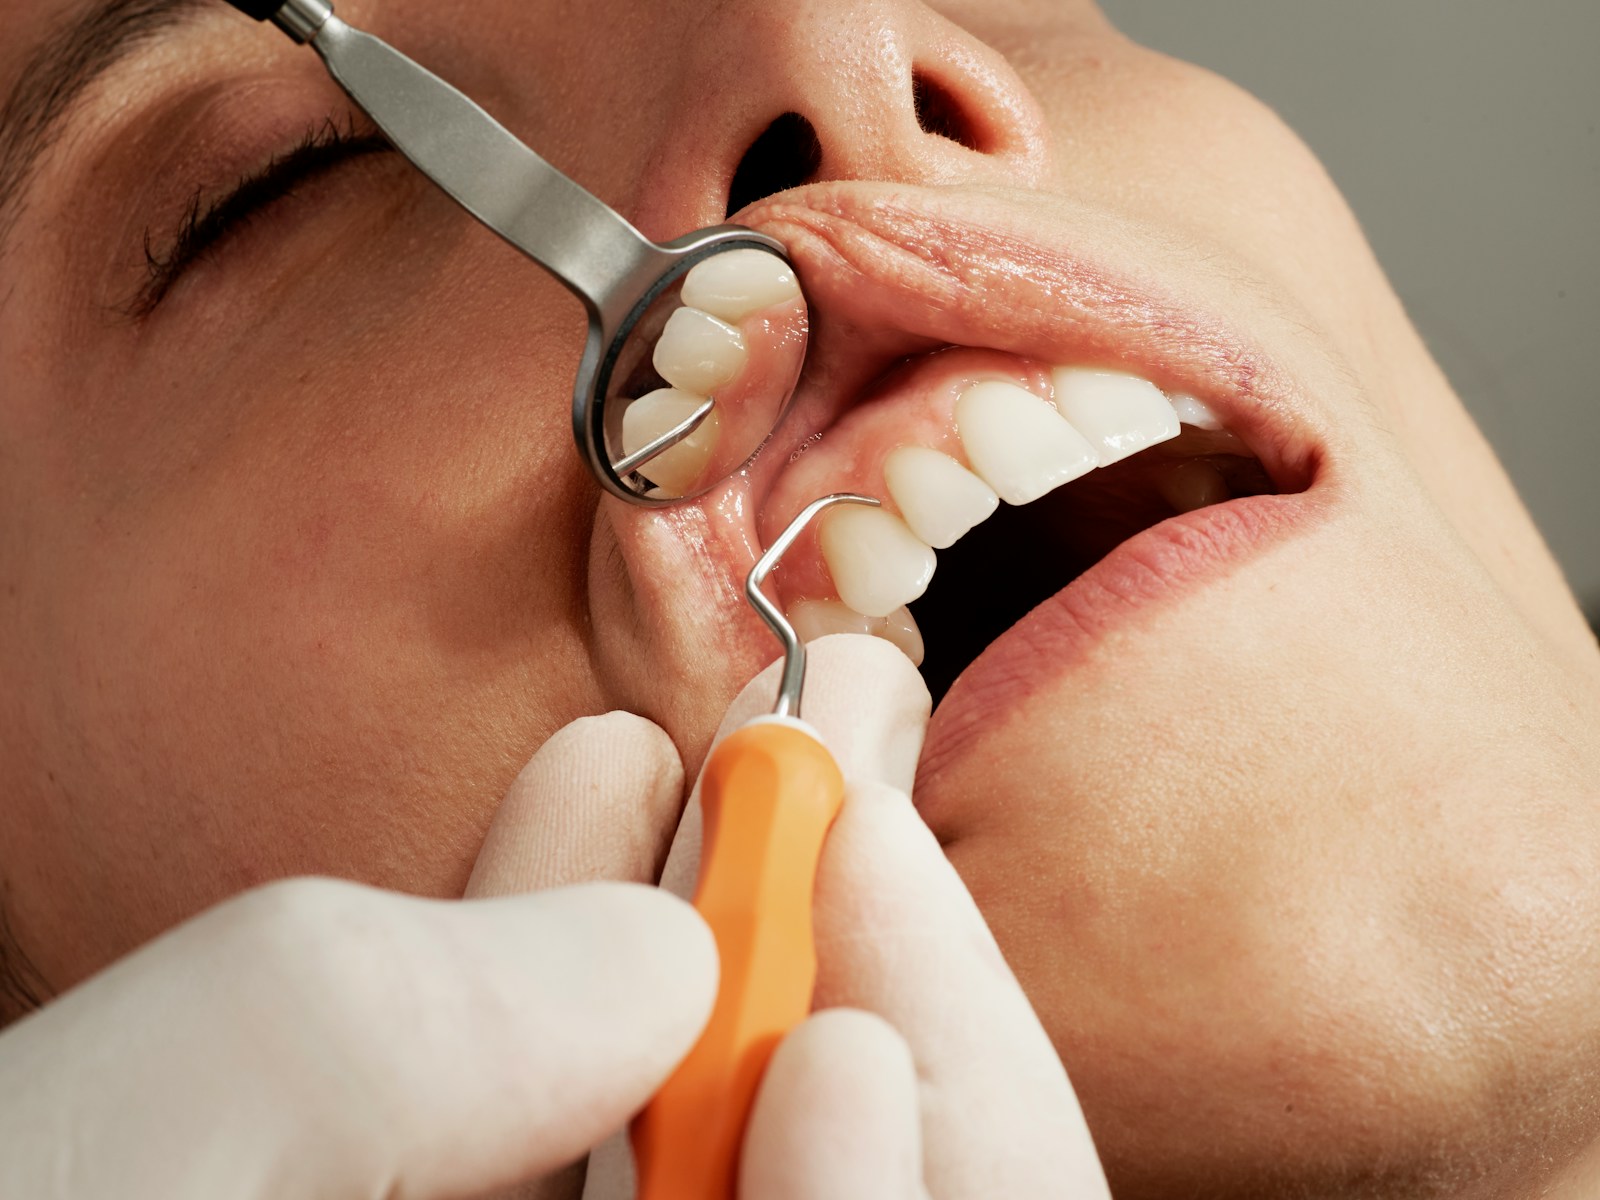 Diş hekimi mesul müdürlük sözleşmesi örneği Poliklinik mesul müdür sözleşmesi örneği